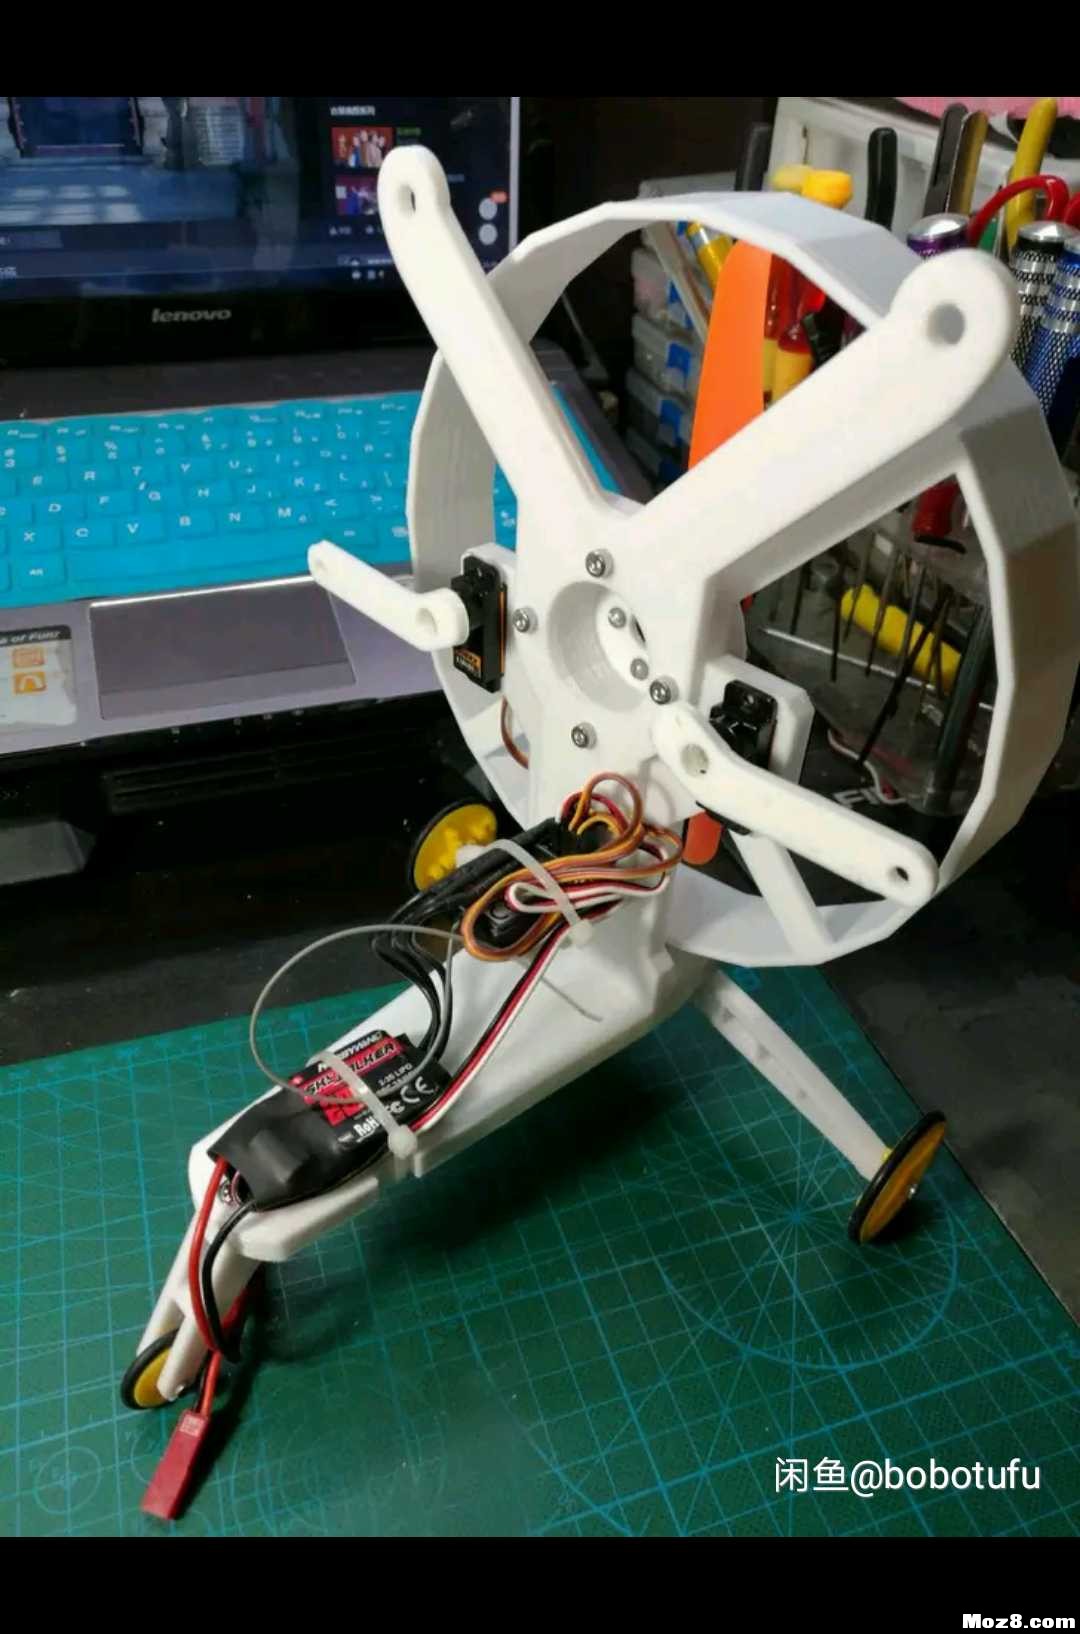 遥控动力伞 3D机架重画 模型,固定翼,舵机,电调,电机 作者:bobotufu 8606 